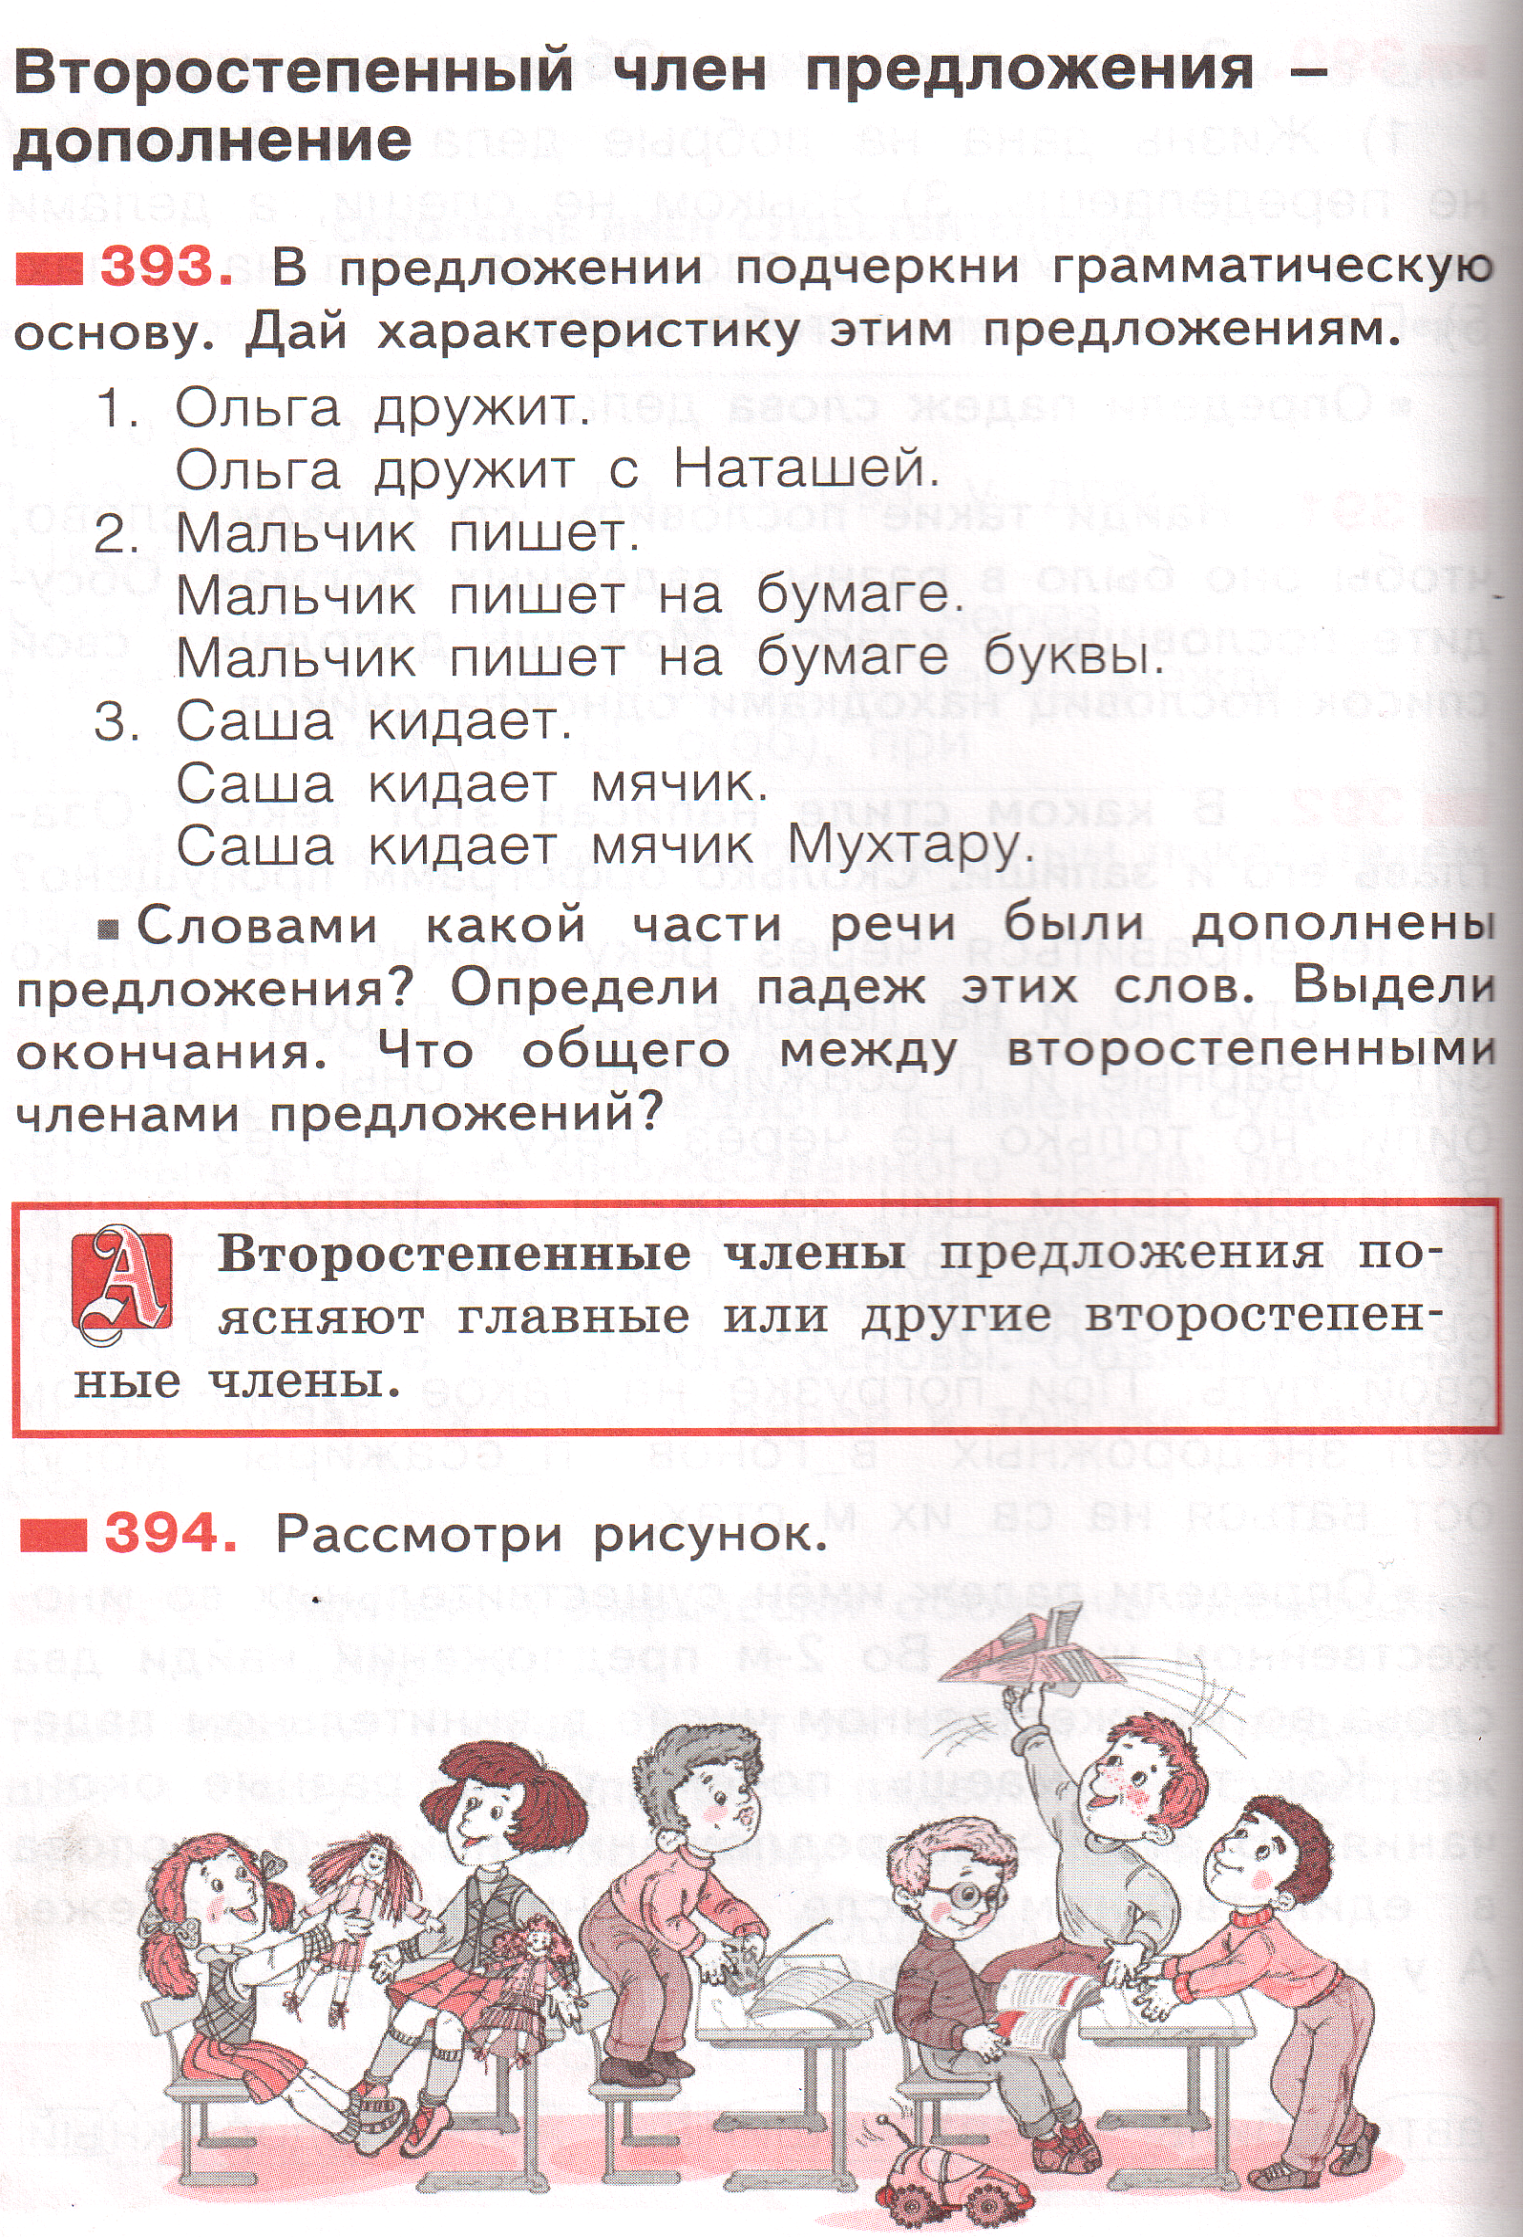 Конспект урока по русскому языку Второстепенный член предложения - дополнение (3 класс)